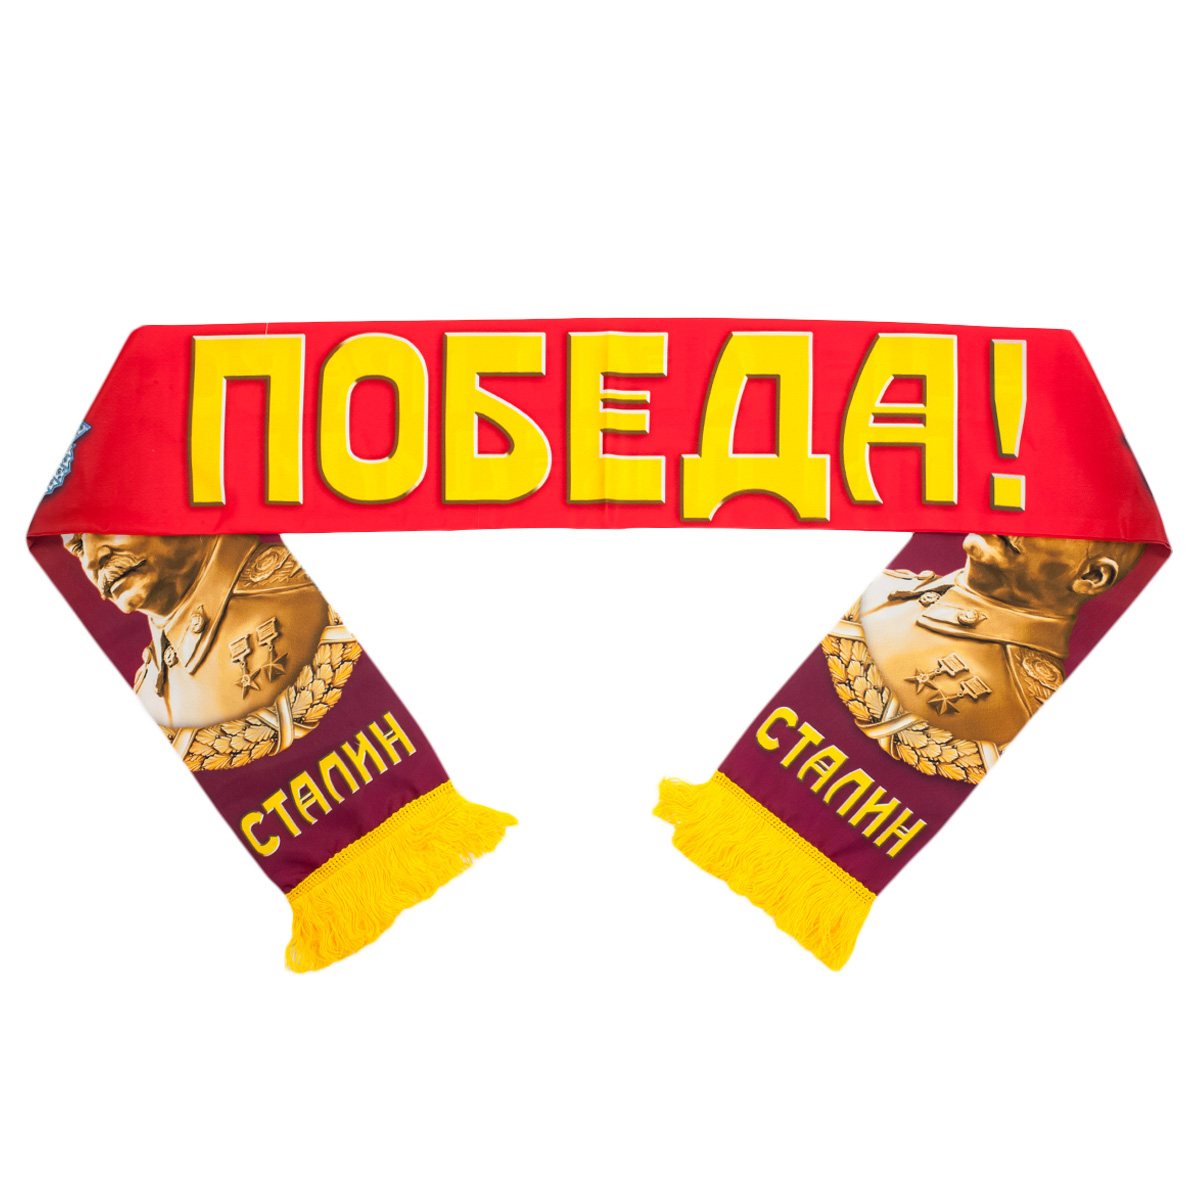 Мужской шарф со Сталиным "Мы победили!" 